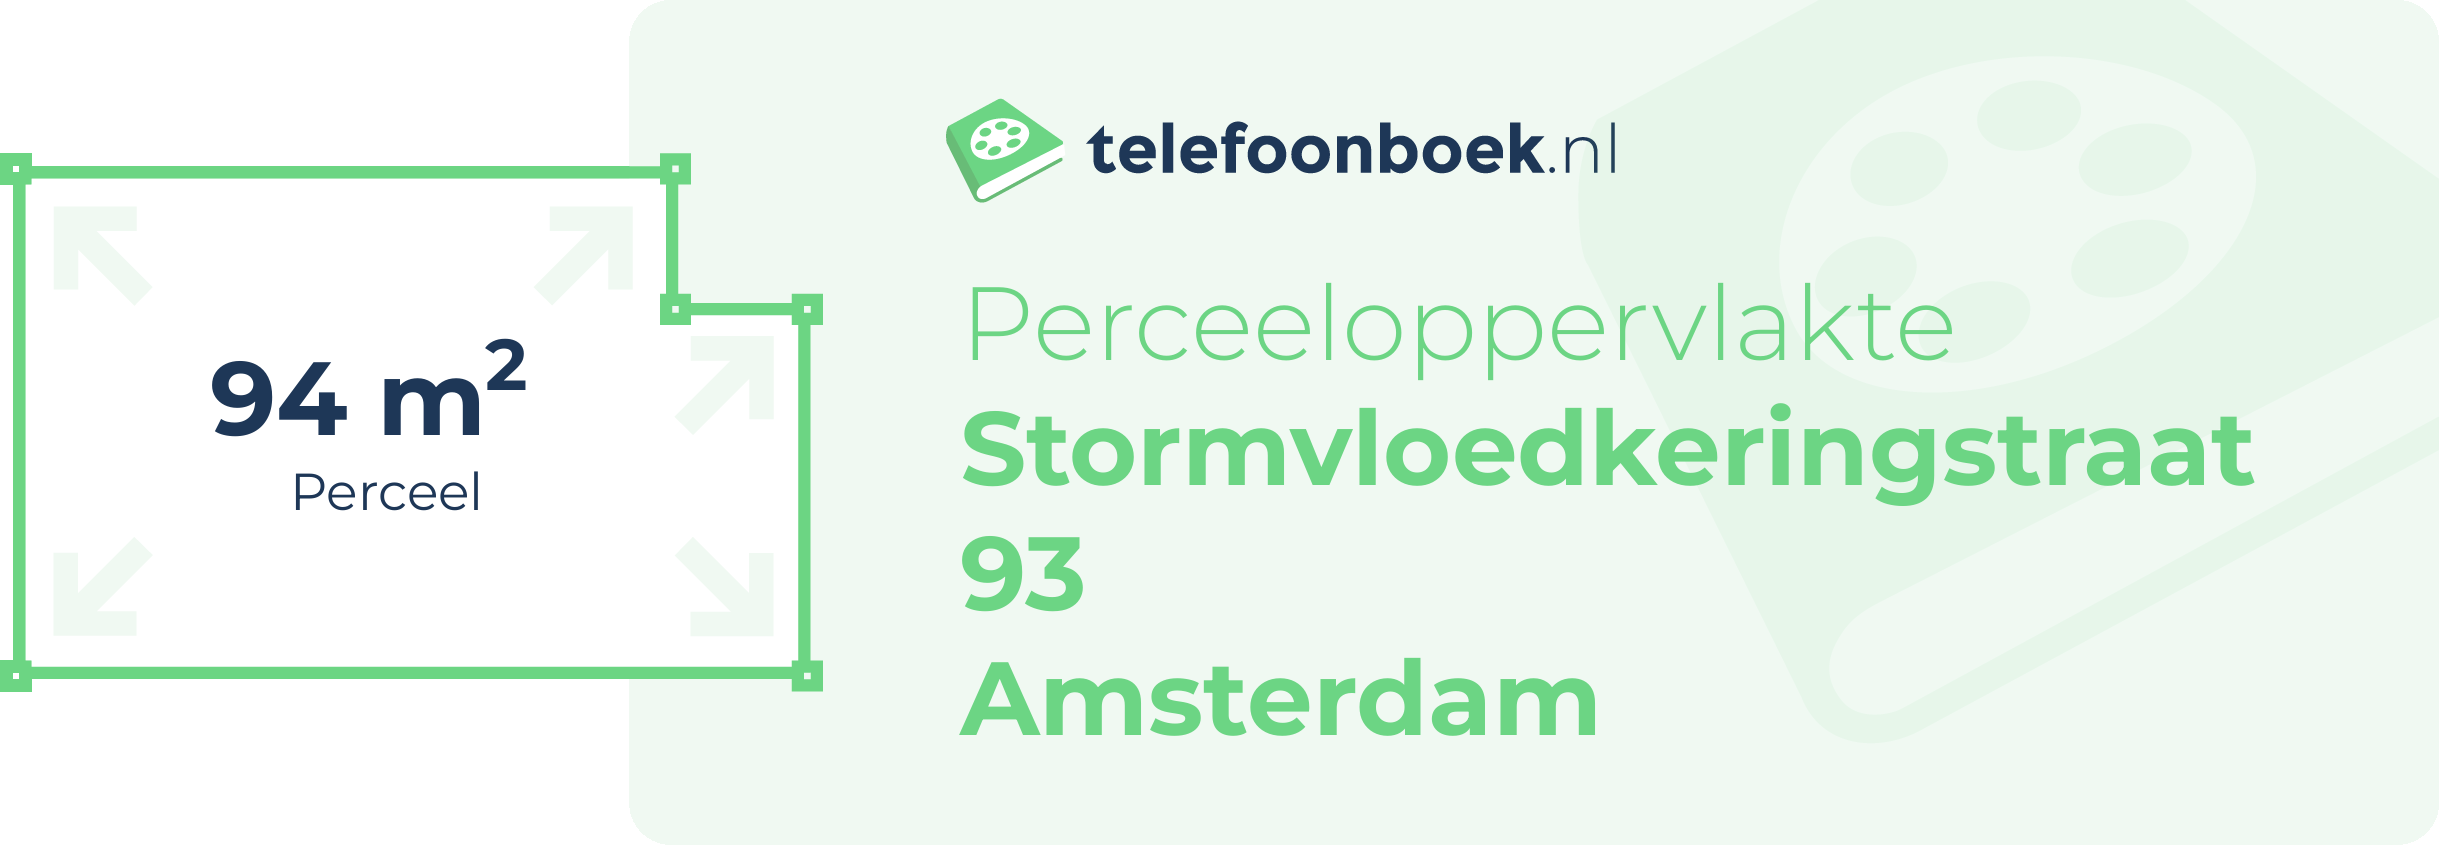 Perceeloppervlakte Stormvloedkeringstraat 93 Amsterdam